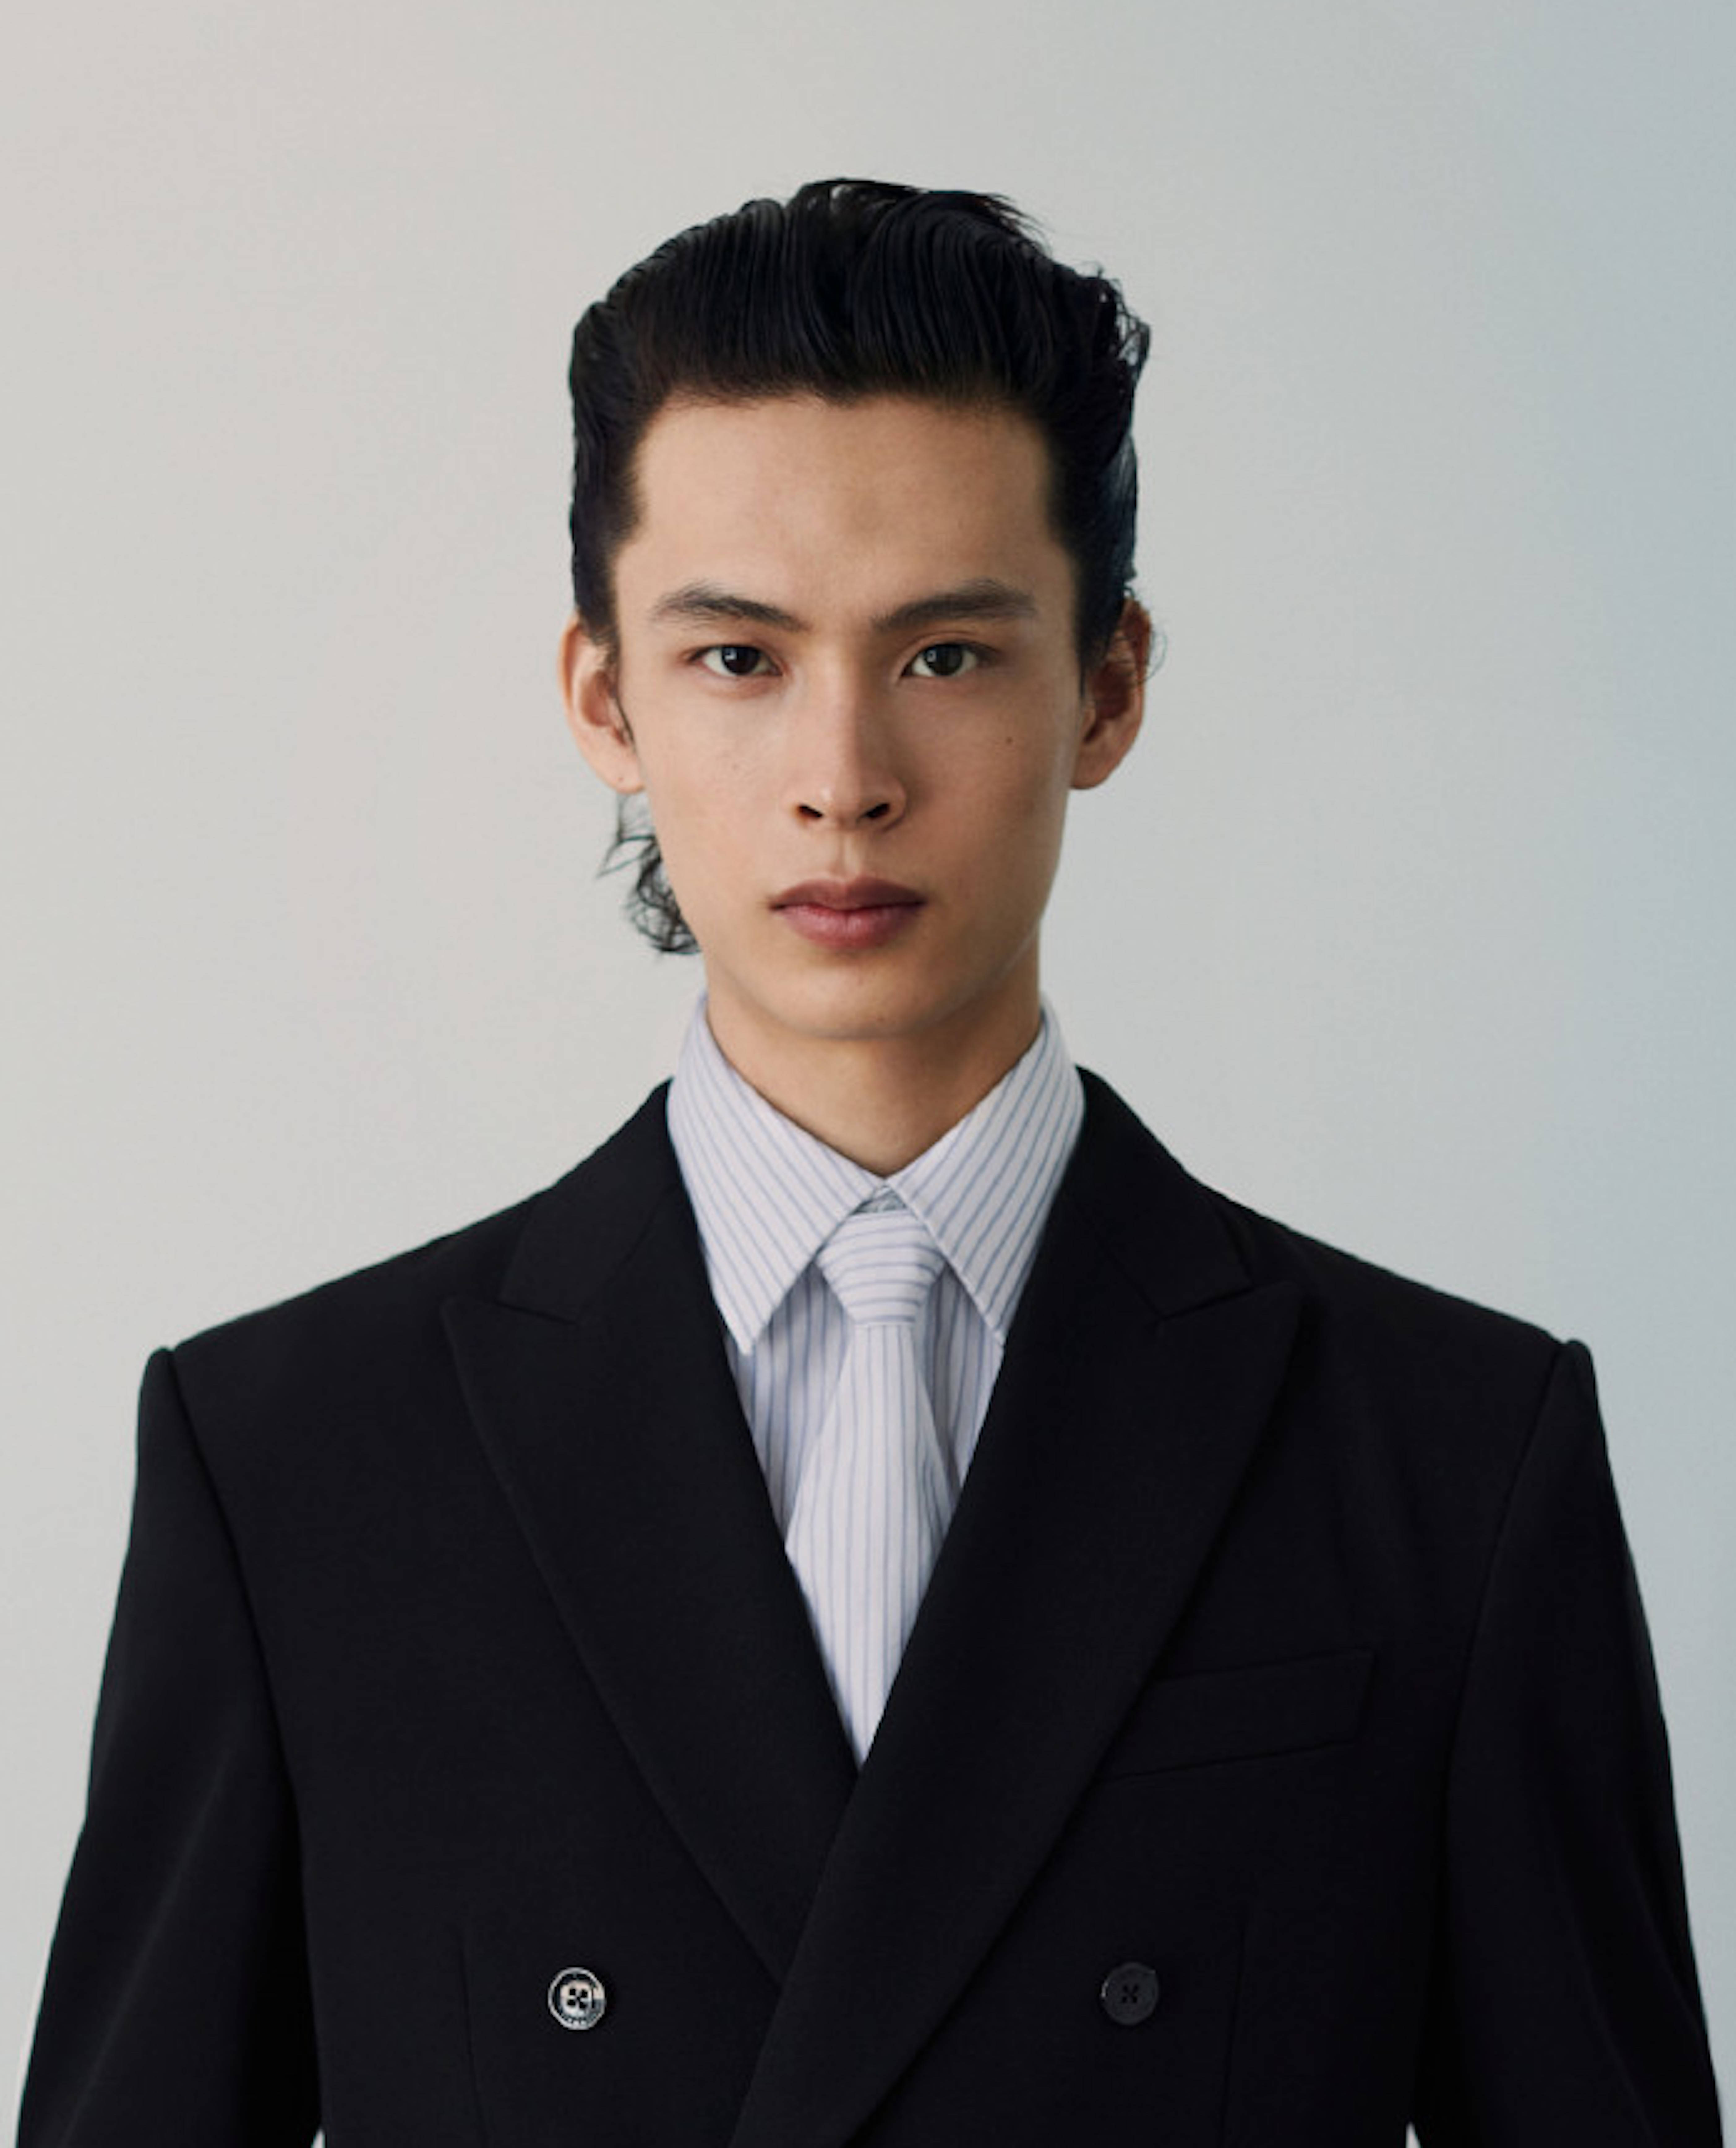 2020搜狐时尚盛典年度超级男模特提名:杨昊